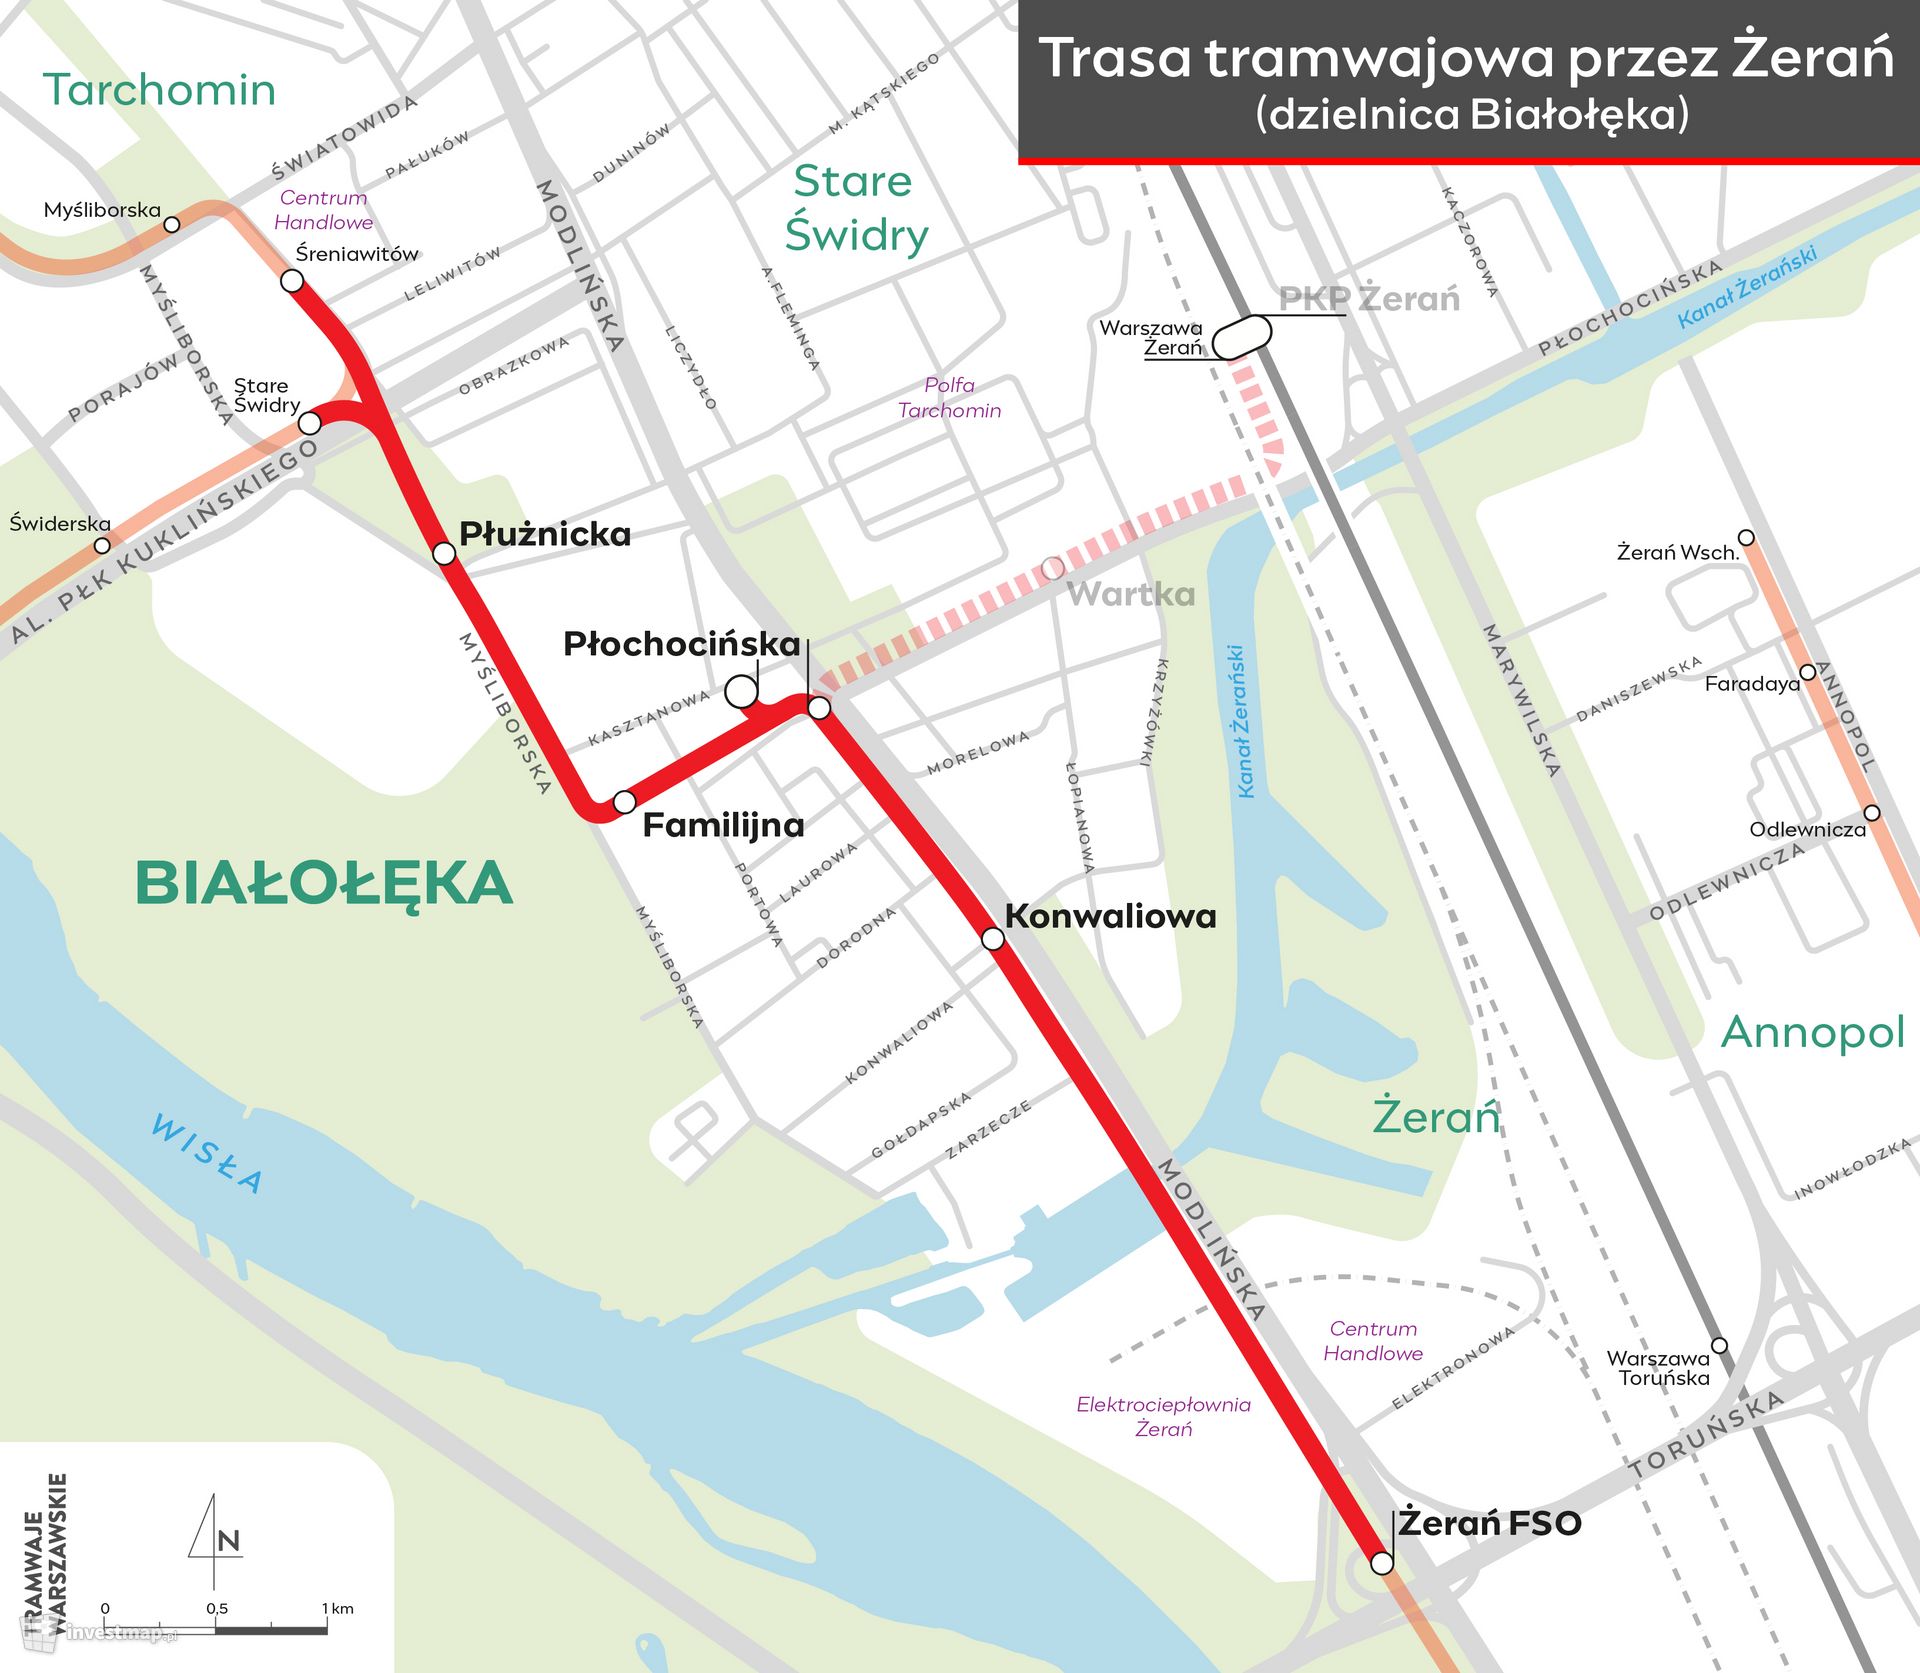 Trasa tramwajowa przez Żerań na Tarchomin